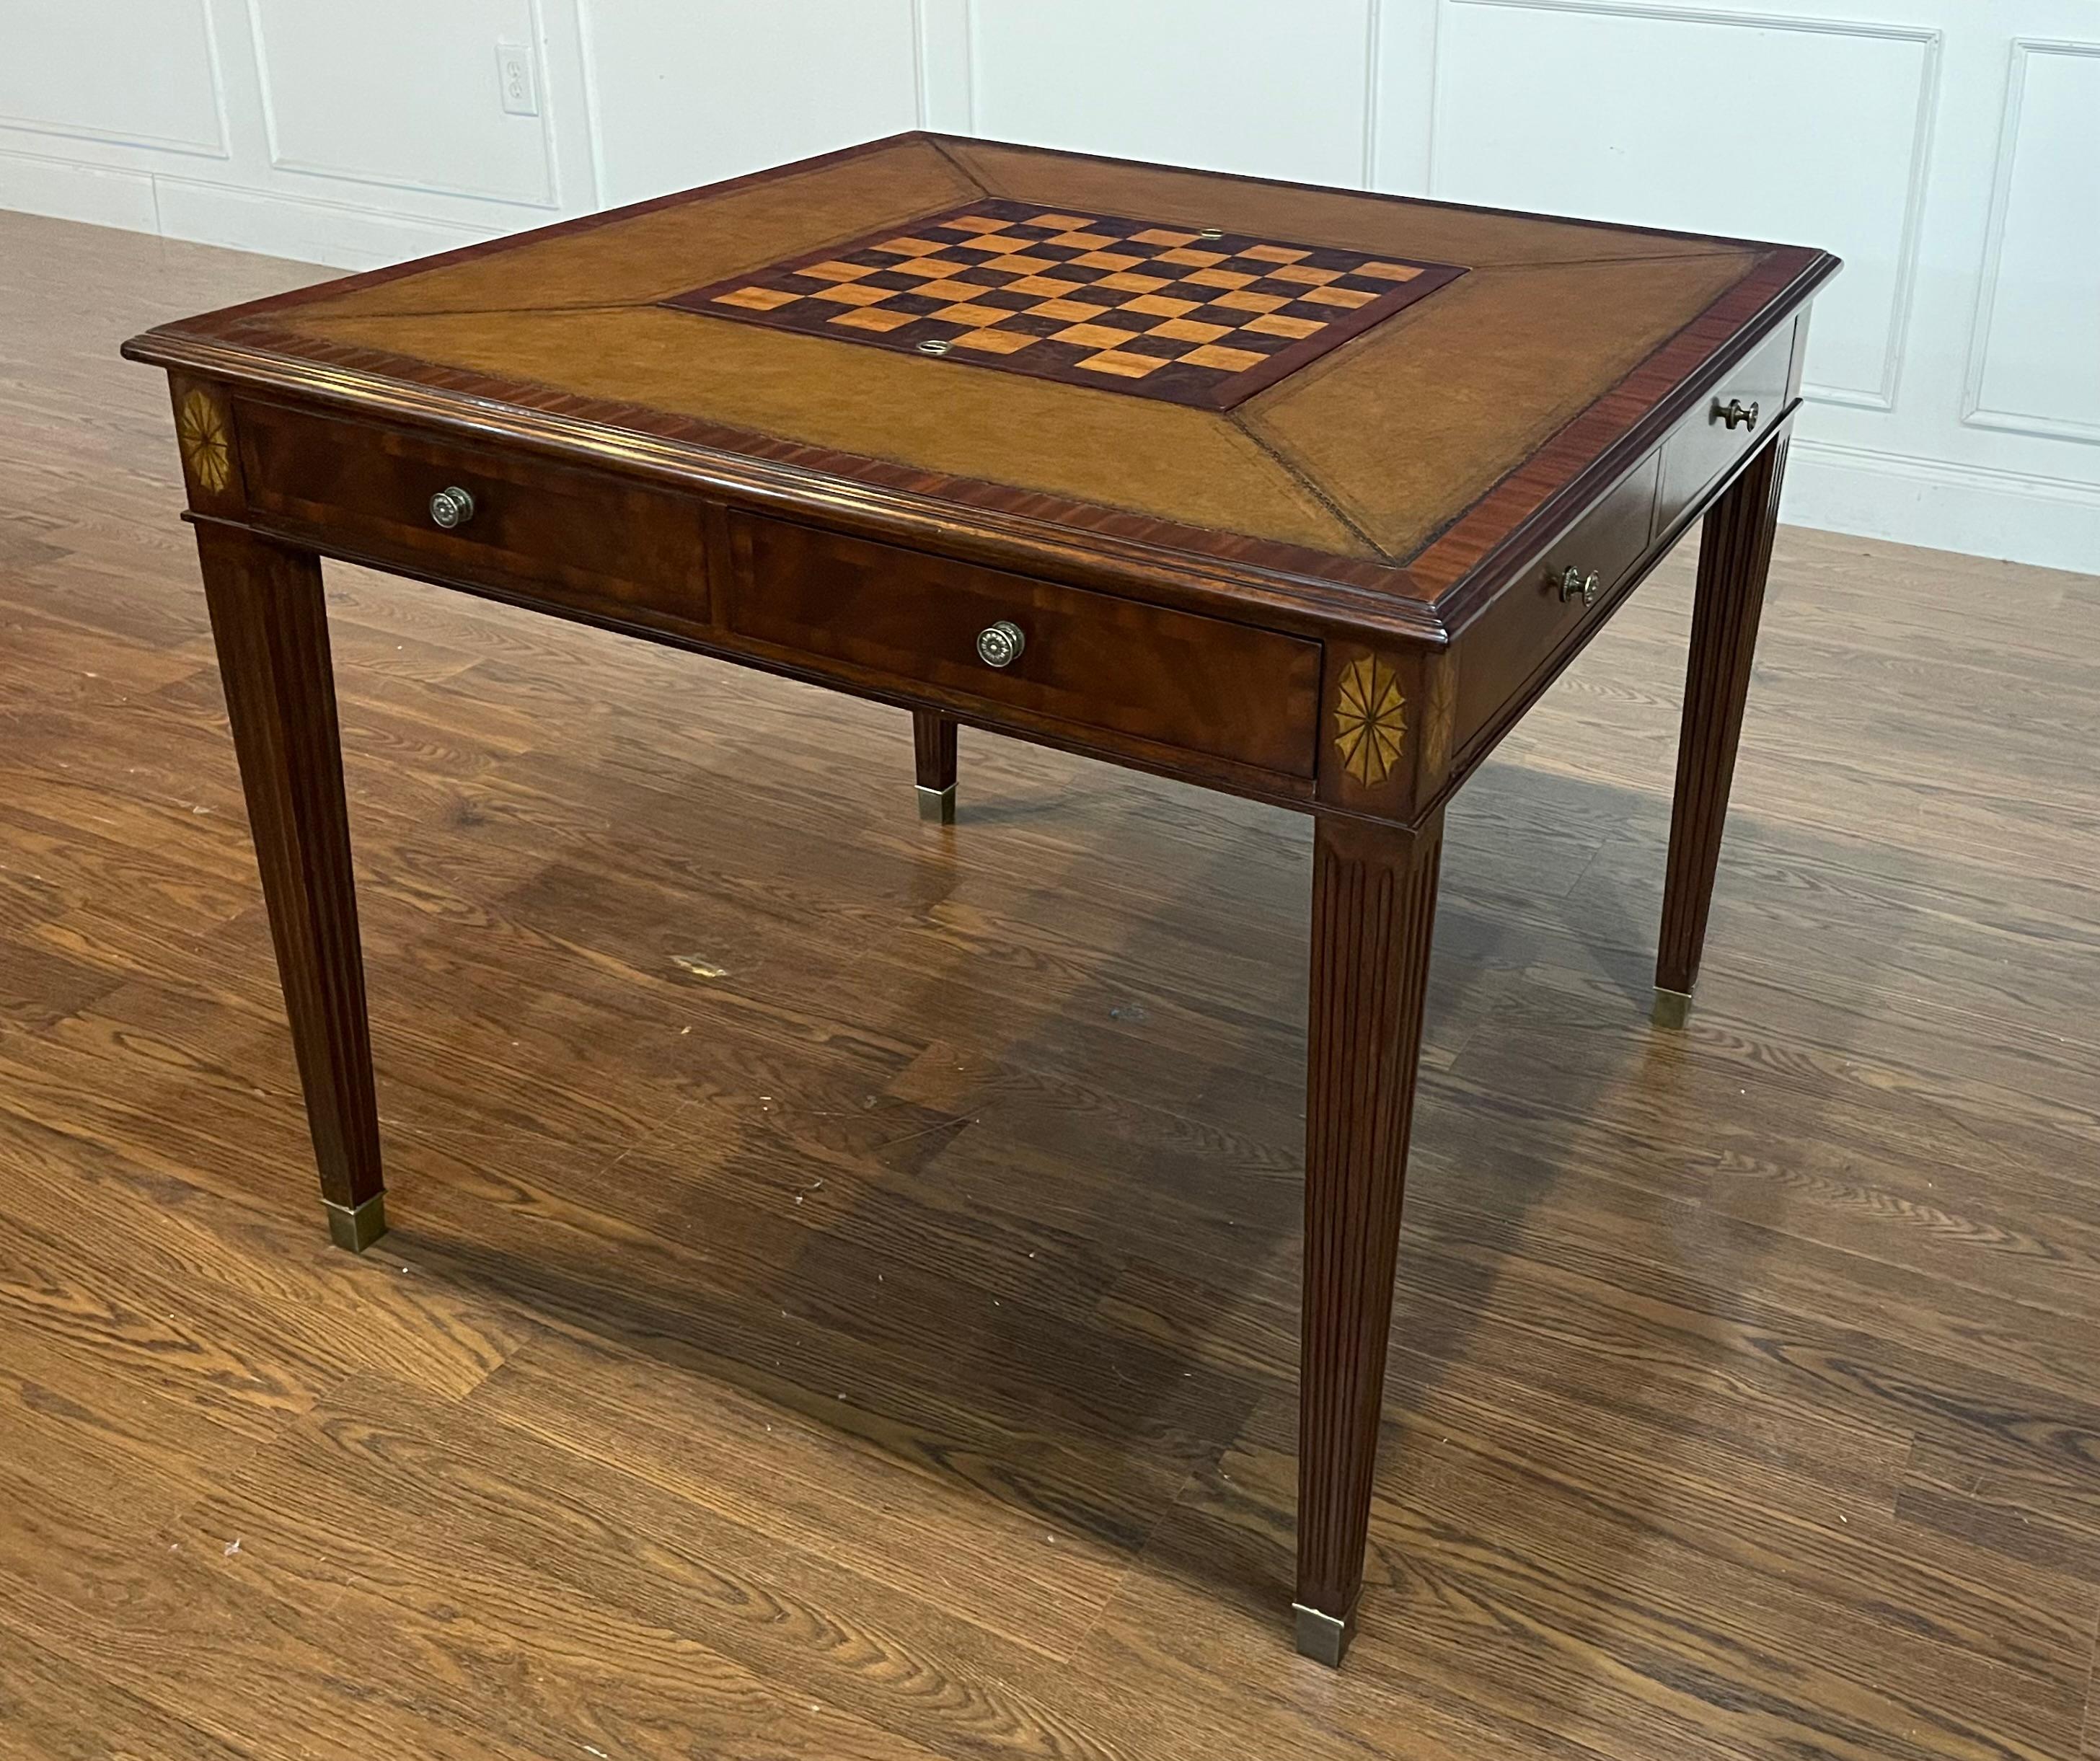 Il s'agit de la table de jeu traditionnelle en acajou English Classics de Maitland Smith.  Il s'agit d'un échantillon de salle d'exposition. Il a 1 à 2 ans et est en très bon état. Il comprend des façades de tiroirs en acajou, des poignées en laiton